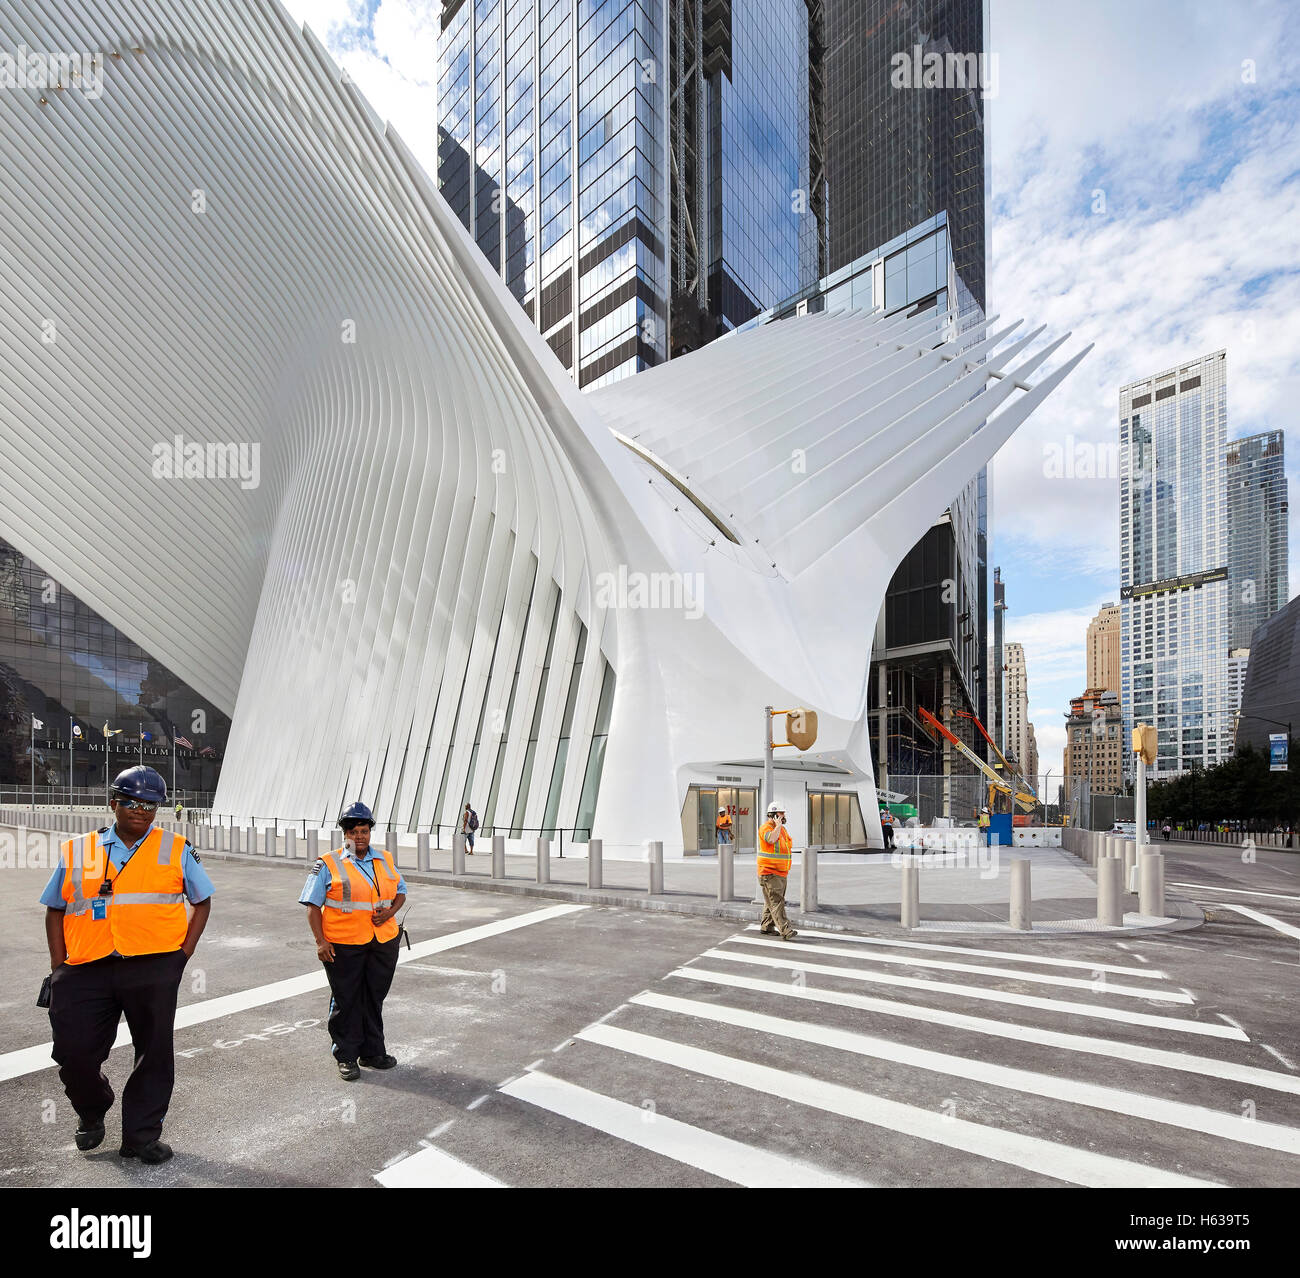 Approche de l'entrée de la rue d'Oculus. L'Oculus, World Trade Center Transportation Hub, New York, United States. Architecte : Banque D'Images